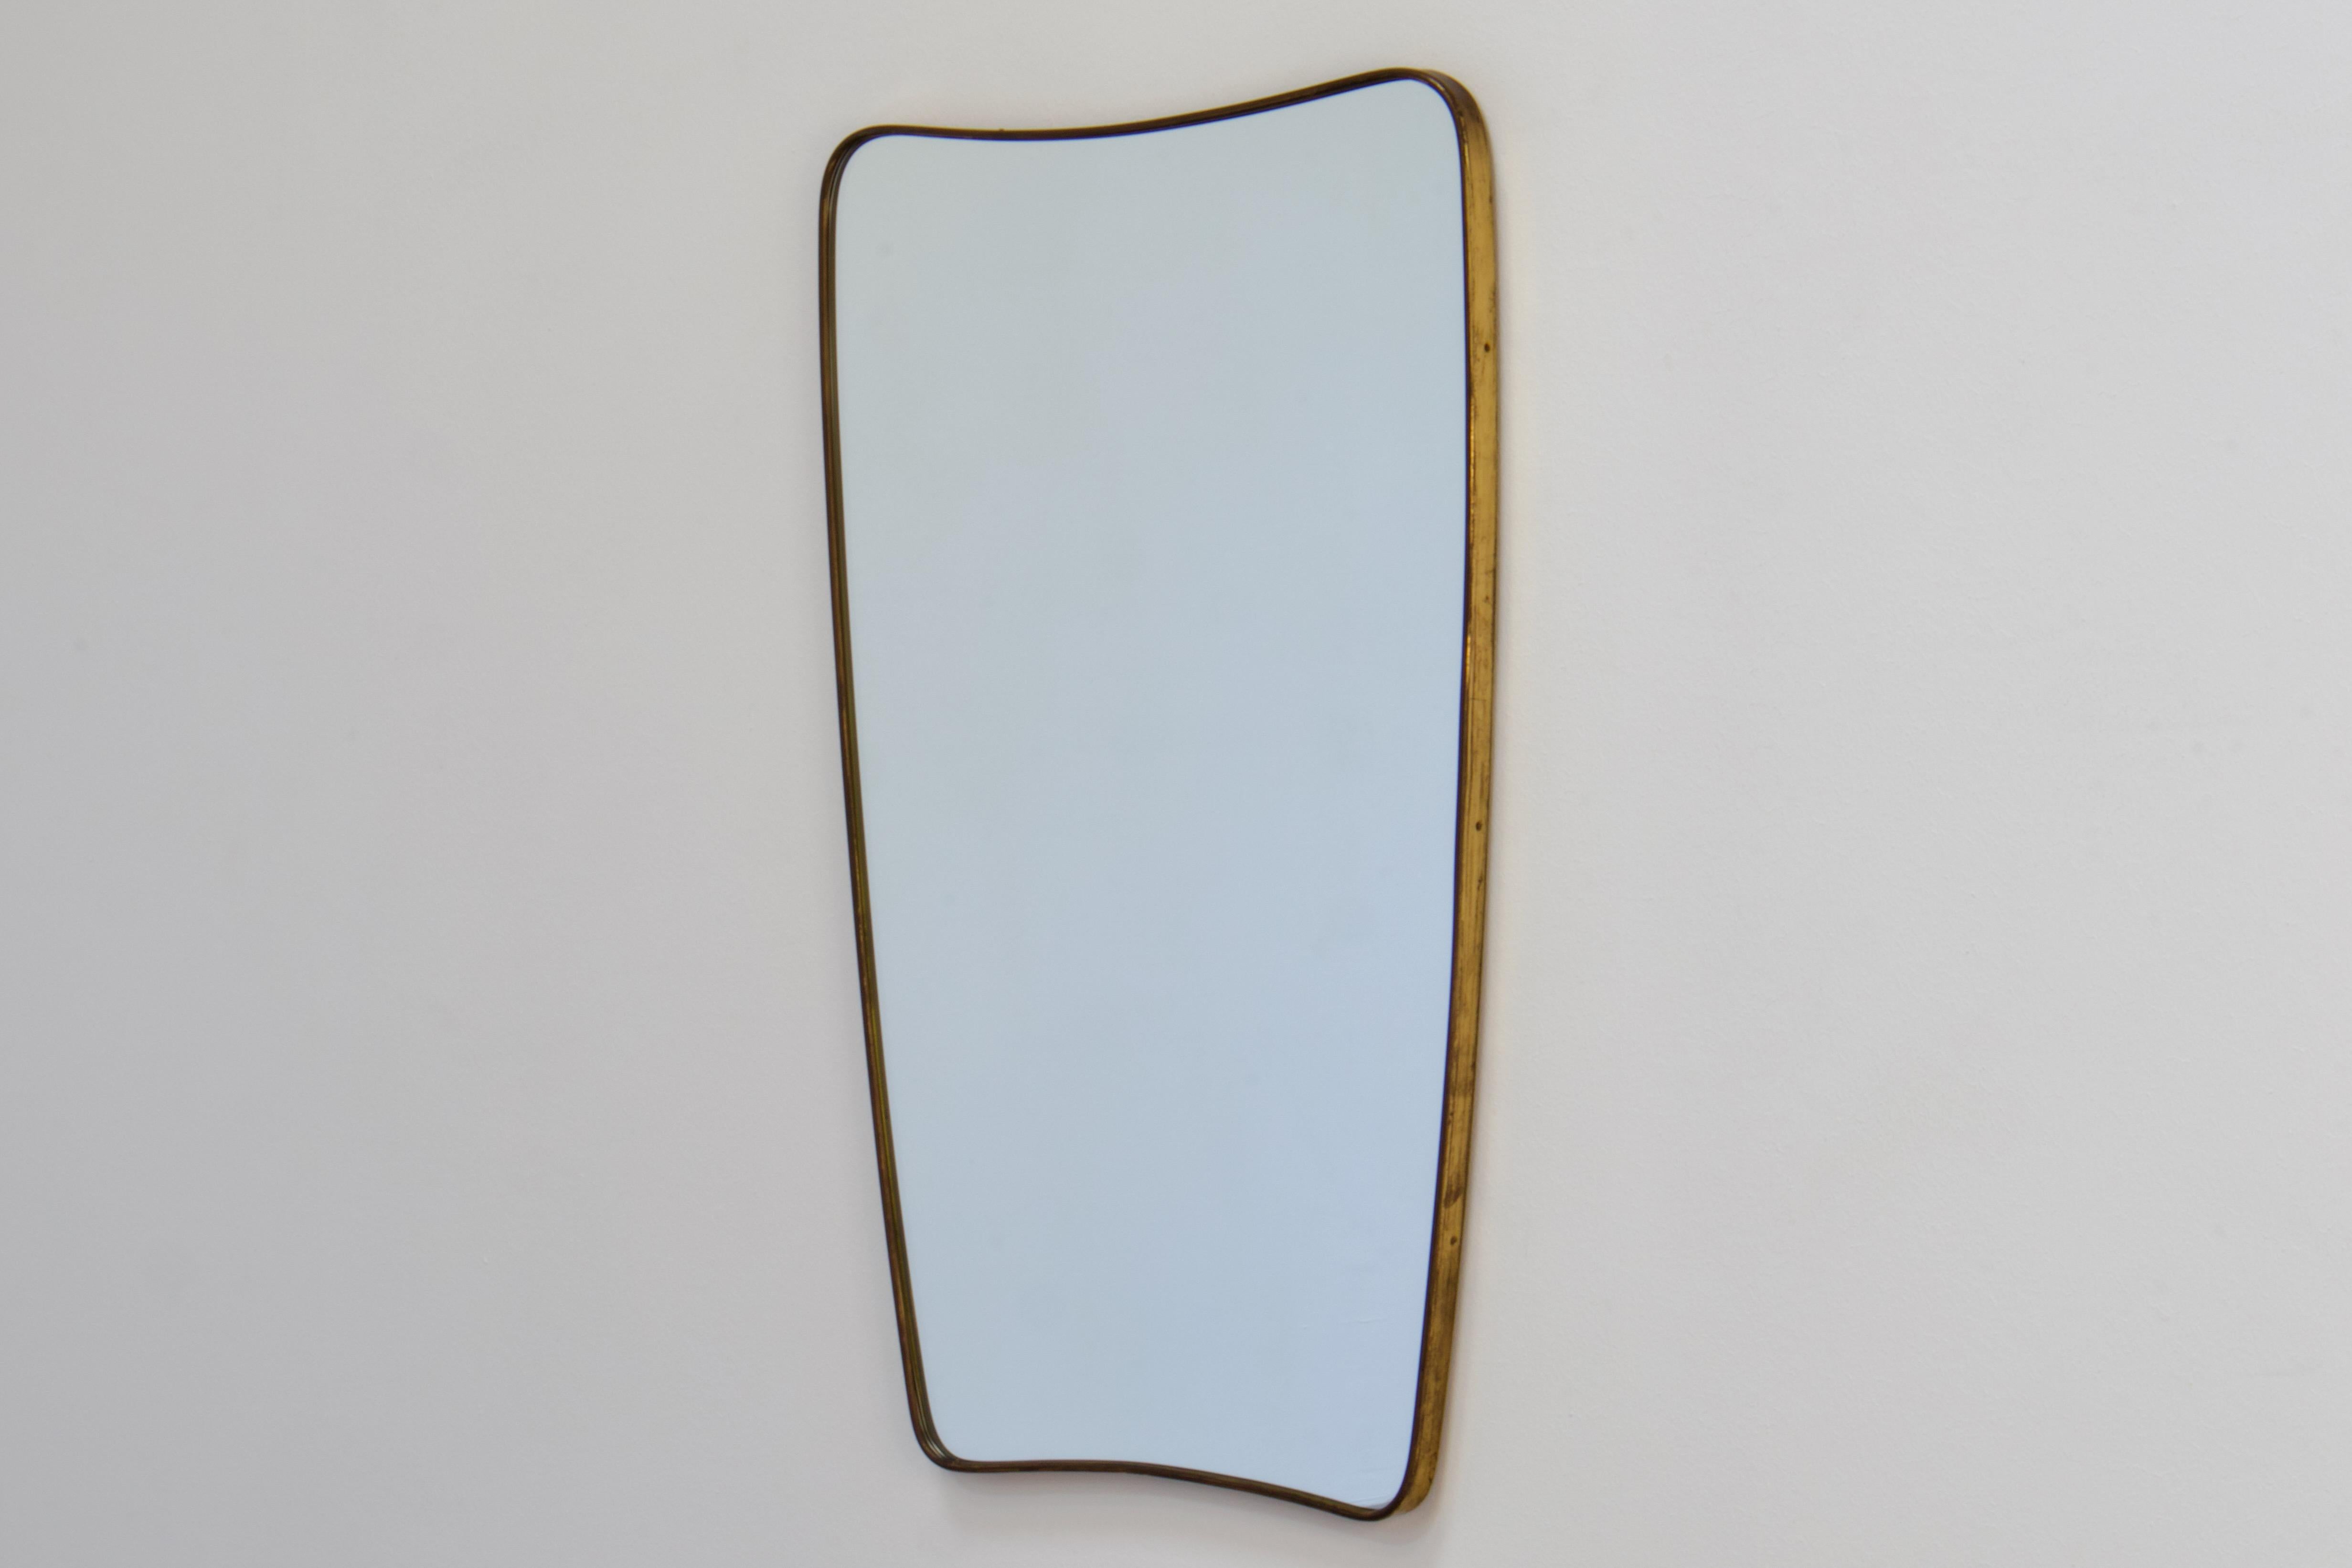 Wandspiegel aus patiniertem Messing aus der Zeit von Gio Ponti, Mid-Century Modern. Hergestellt in Italien in den 1950er Jahren.

Die Form des Spiegels ist ein sehr elegantes Oval mit abgerundeten Ecken und schöner Verjüngung. Der obere Teil ist